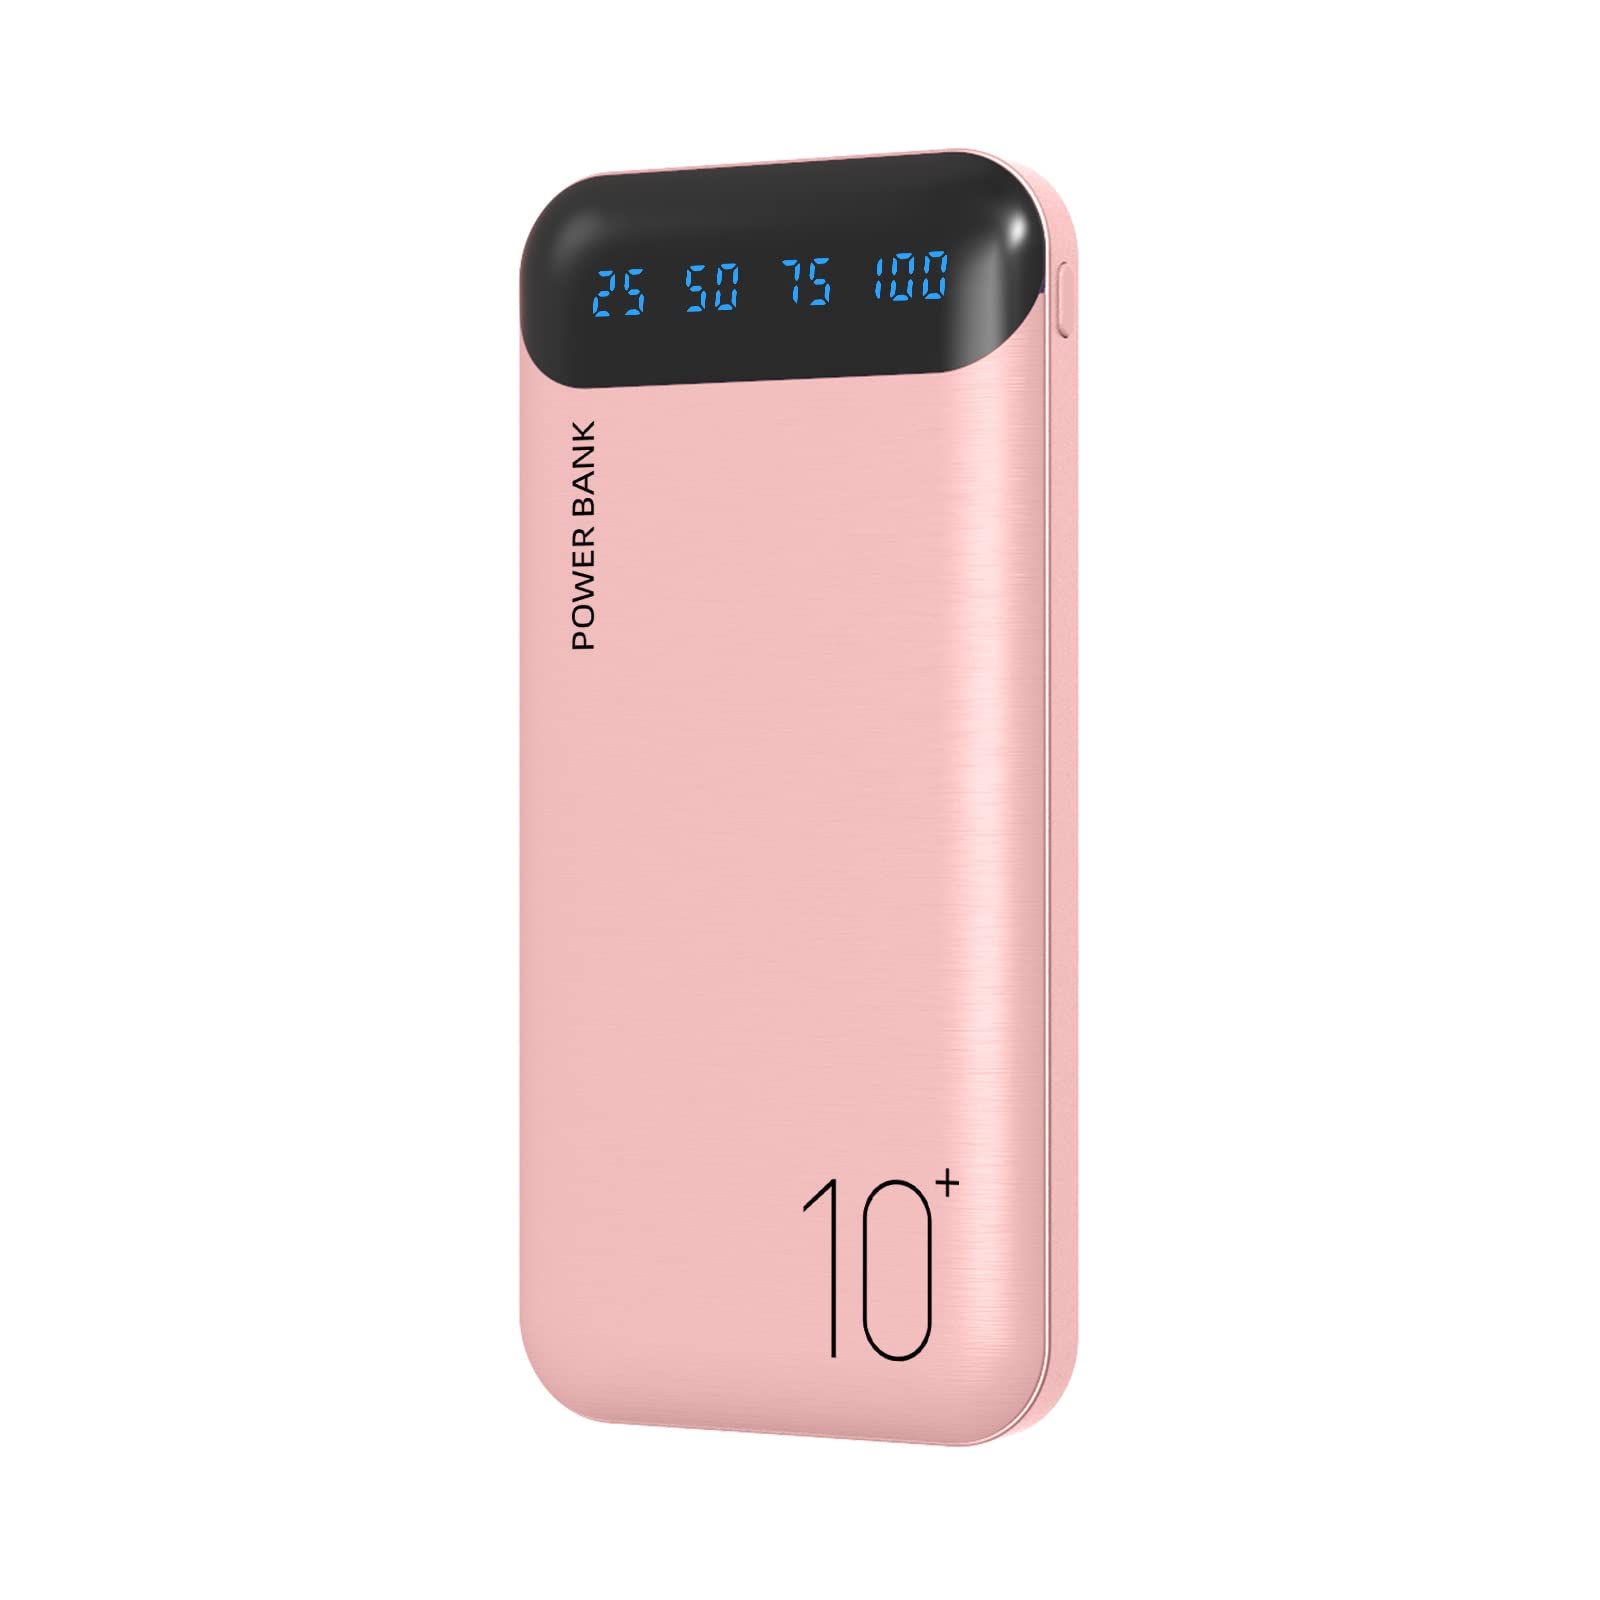 Batterie Externe 10000mah Rose, Power Bank Portable Avec 2 Ports Sorties Usb + Port Entrée Type-C, Pour Huawei Iphone Ipad, Etc